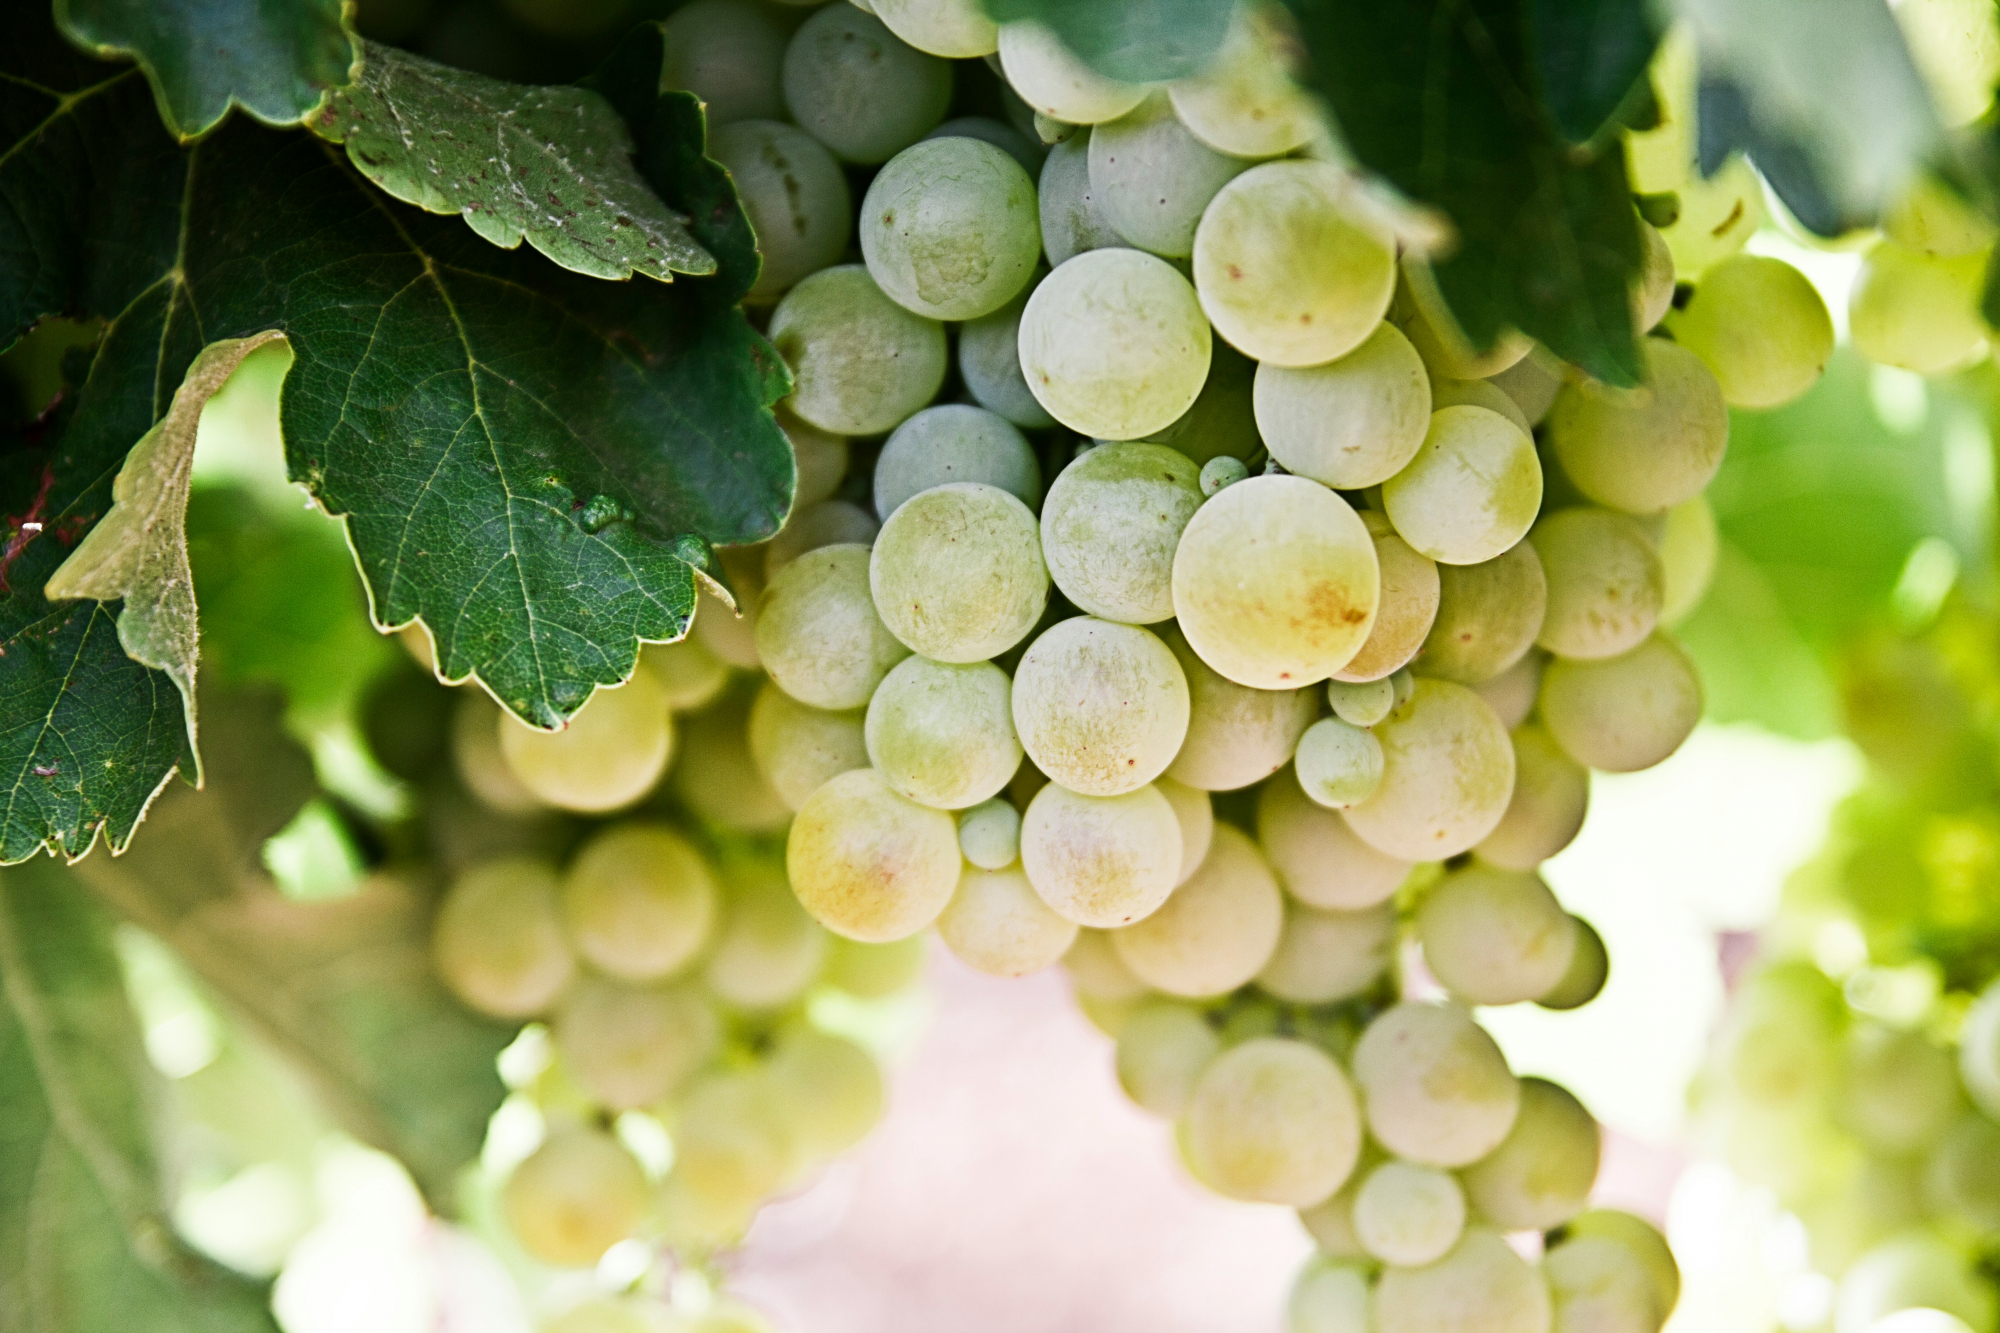 découvrez notre sélection de vins blancs, issus des meilleures régions viticoles, pour accompagner vos repas et vos soirées détente.